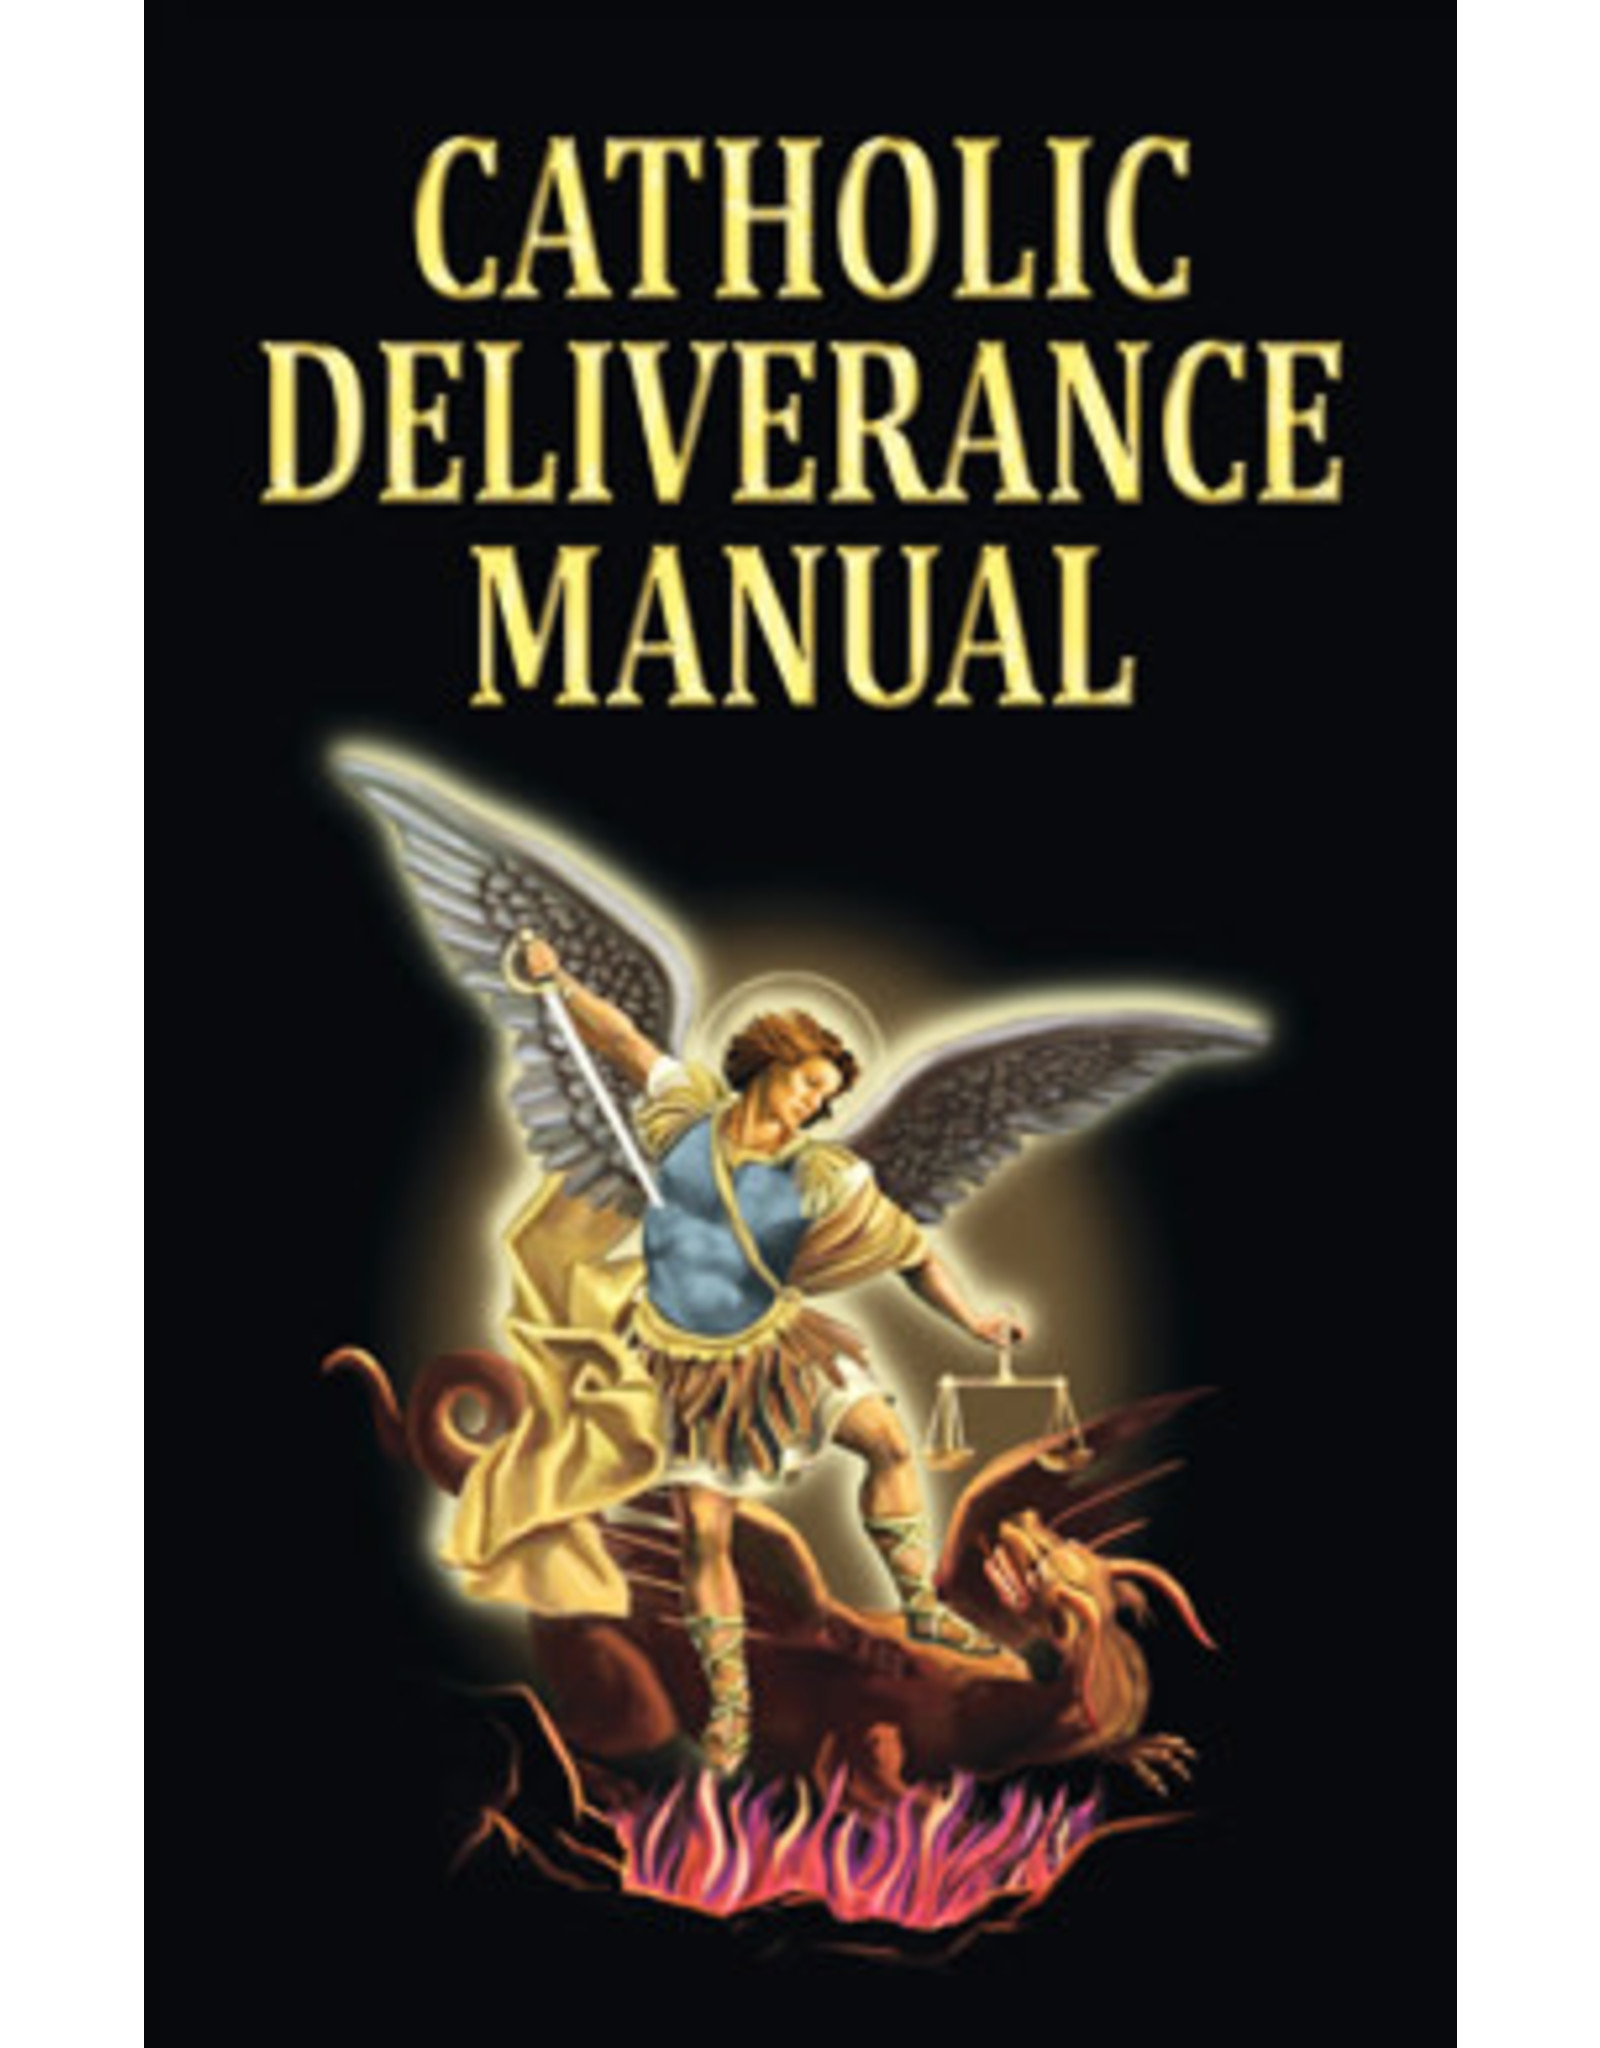 Valentine Publishing Catholic Deliverance Manual